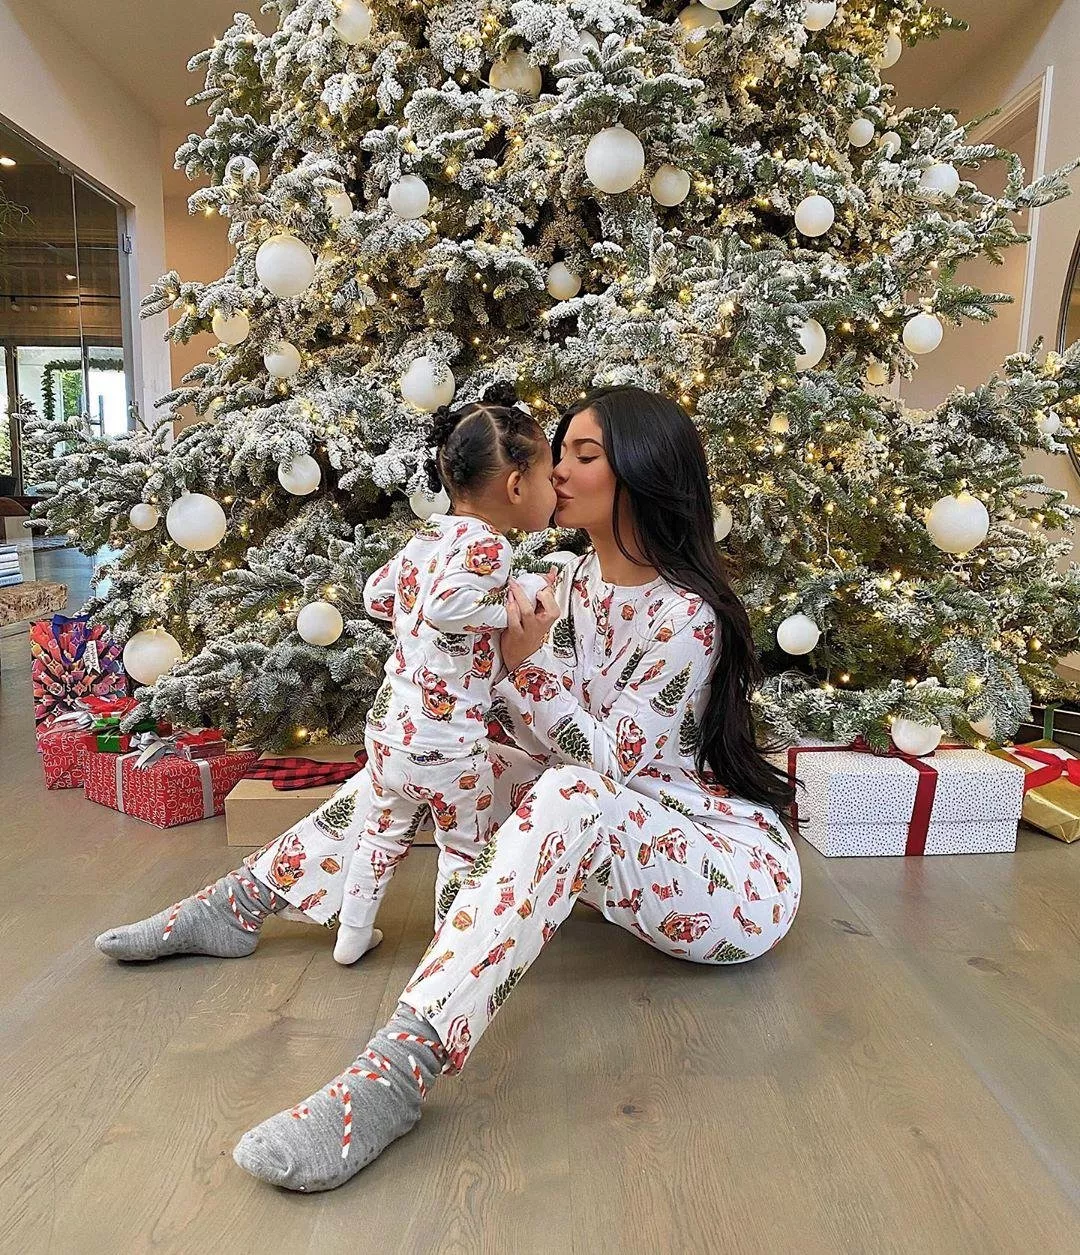 هكذا احتفلت Kylie Jenner بعيد الكرسمس مع ابنتها Stormi